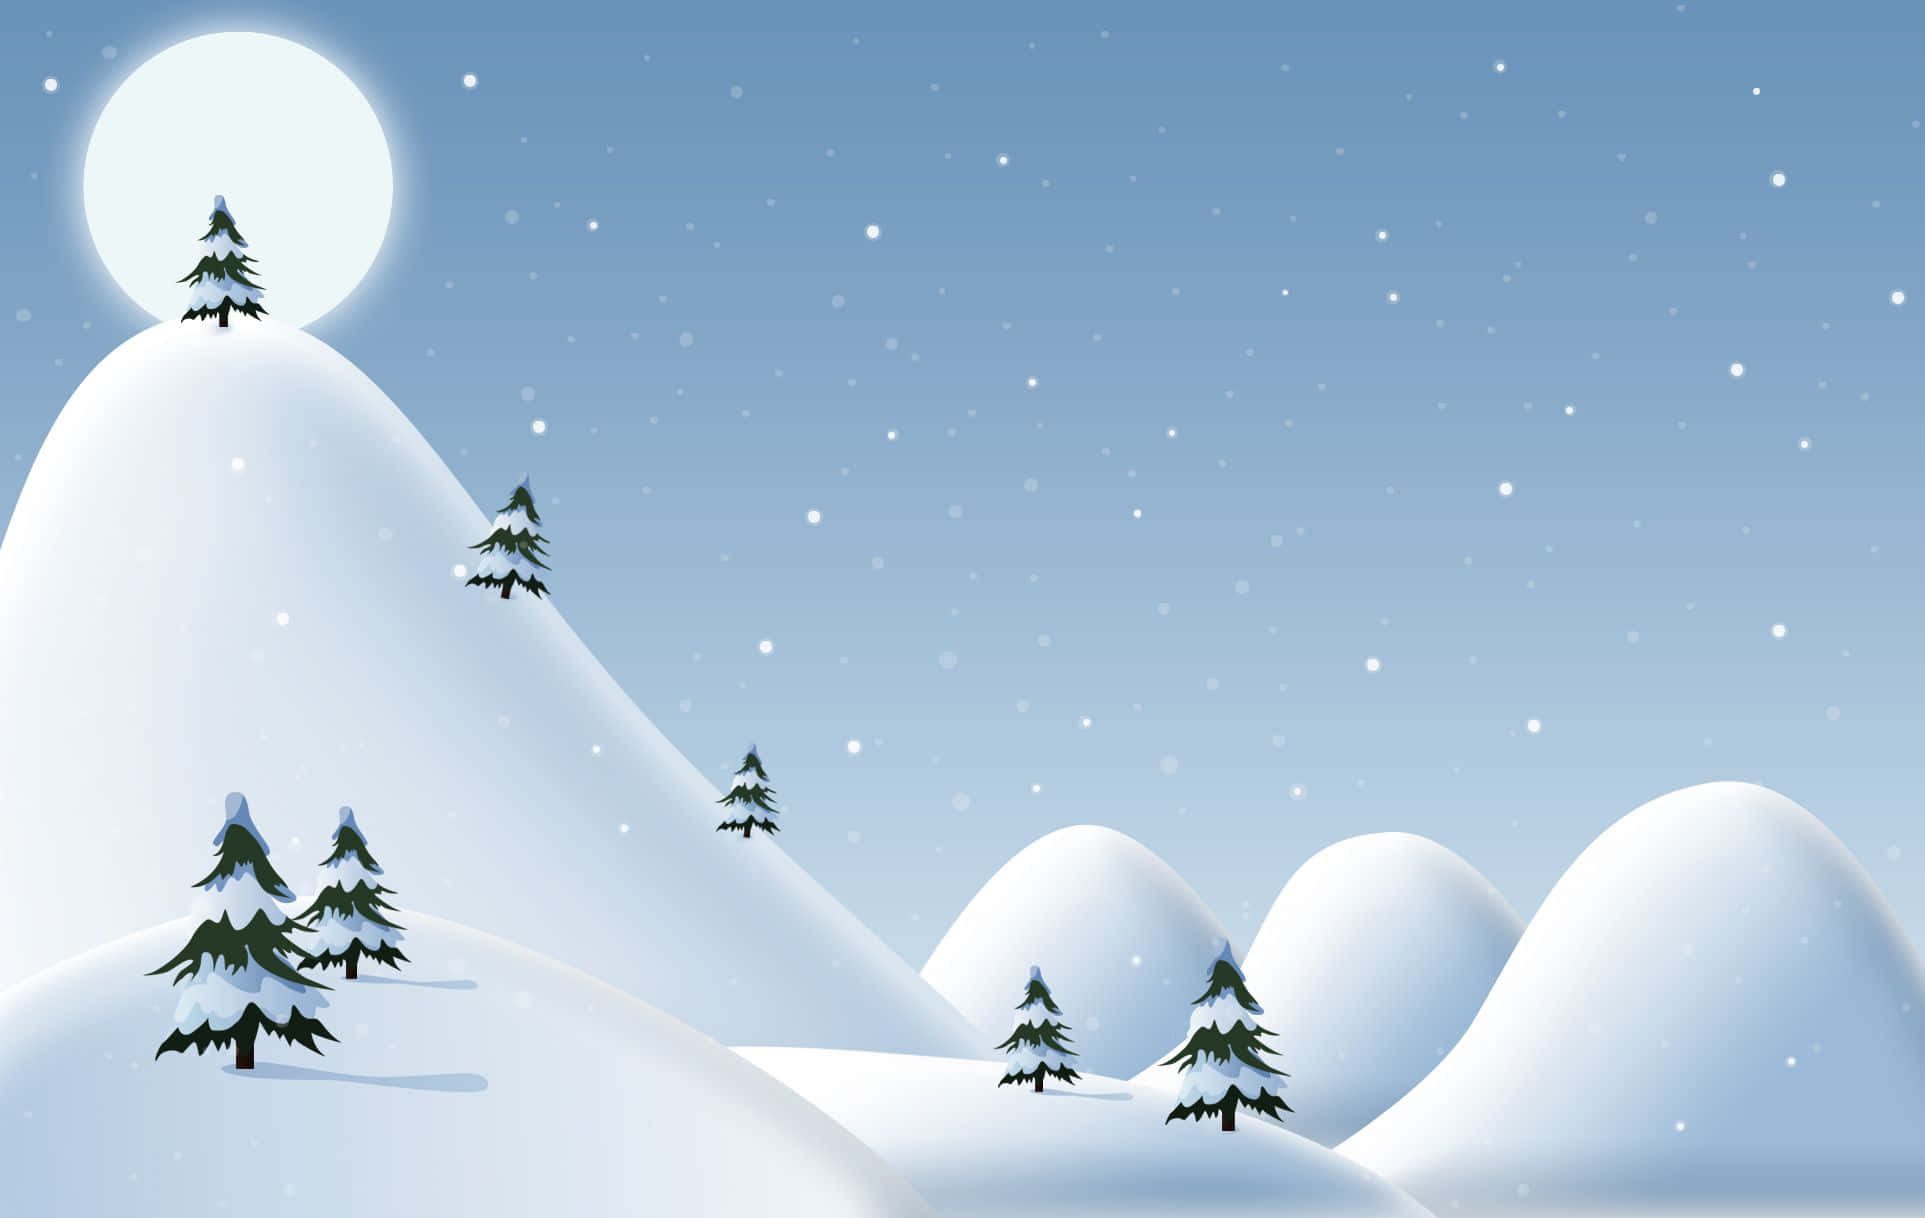 Feiernsie Die Weihnachtsfeiertage Stilvoll Mit Diesem Lustigen Und Festlichen Hintergrund!